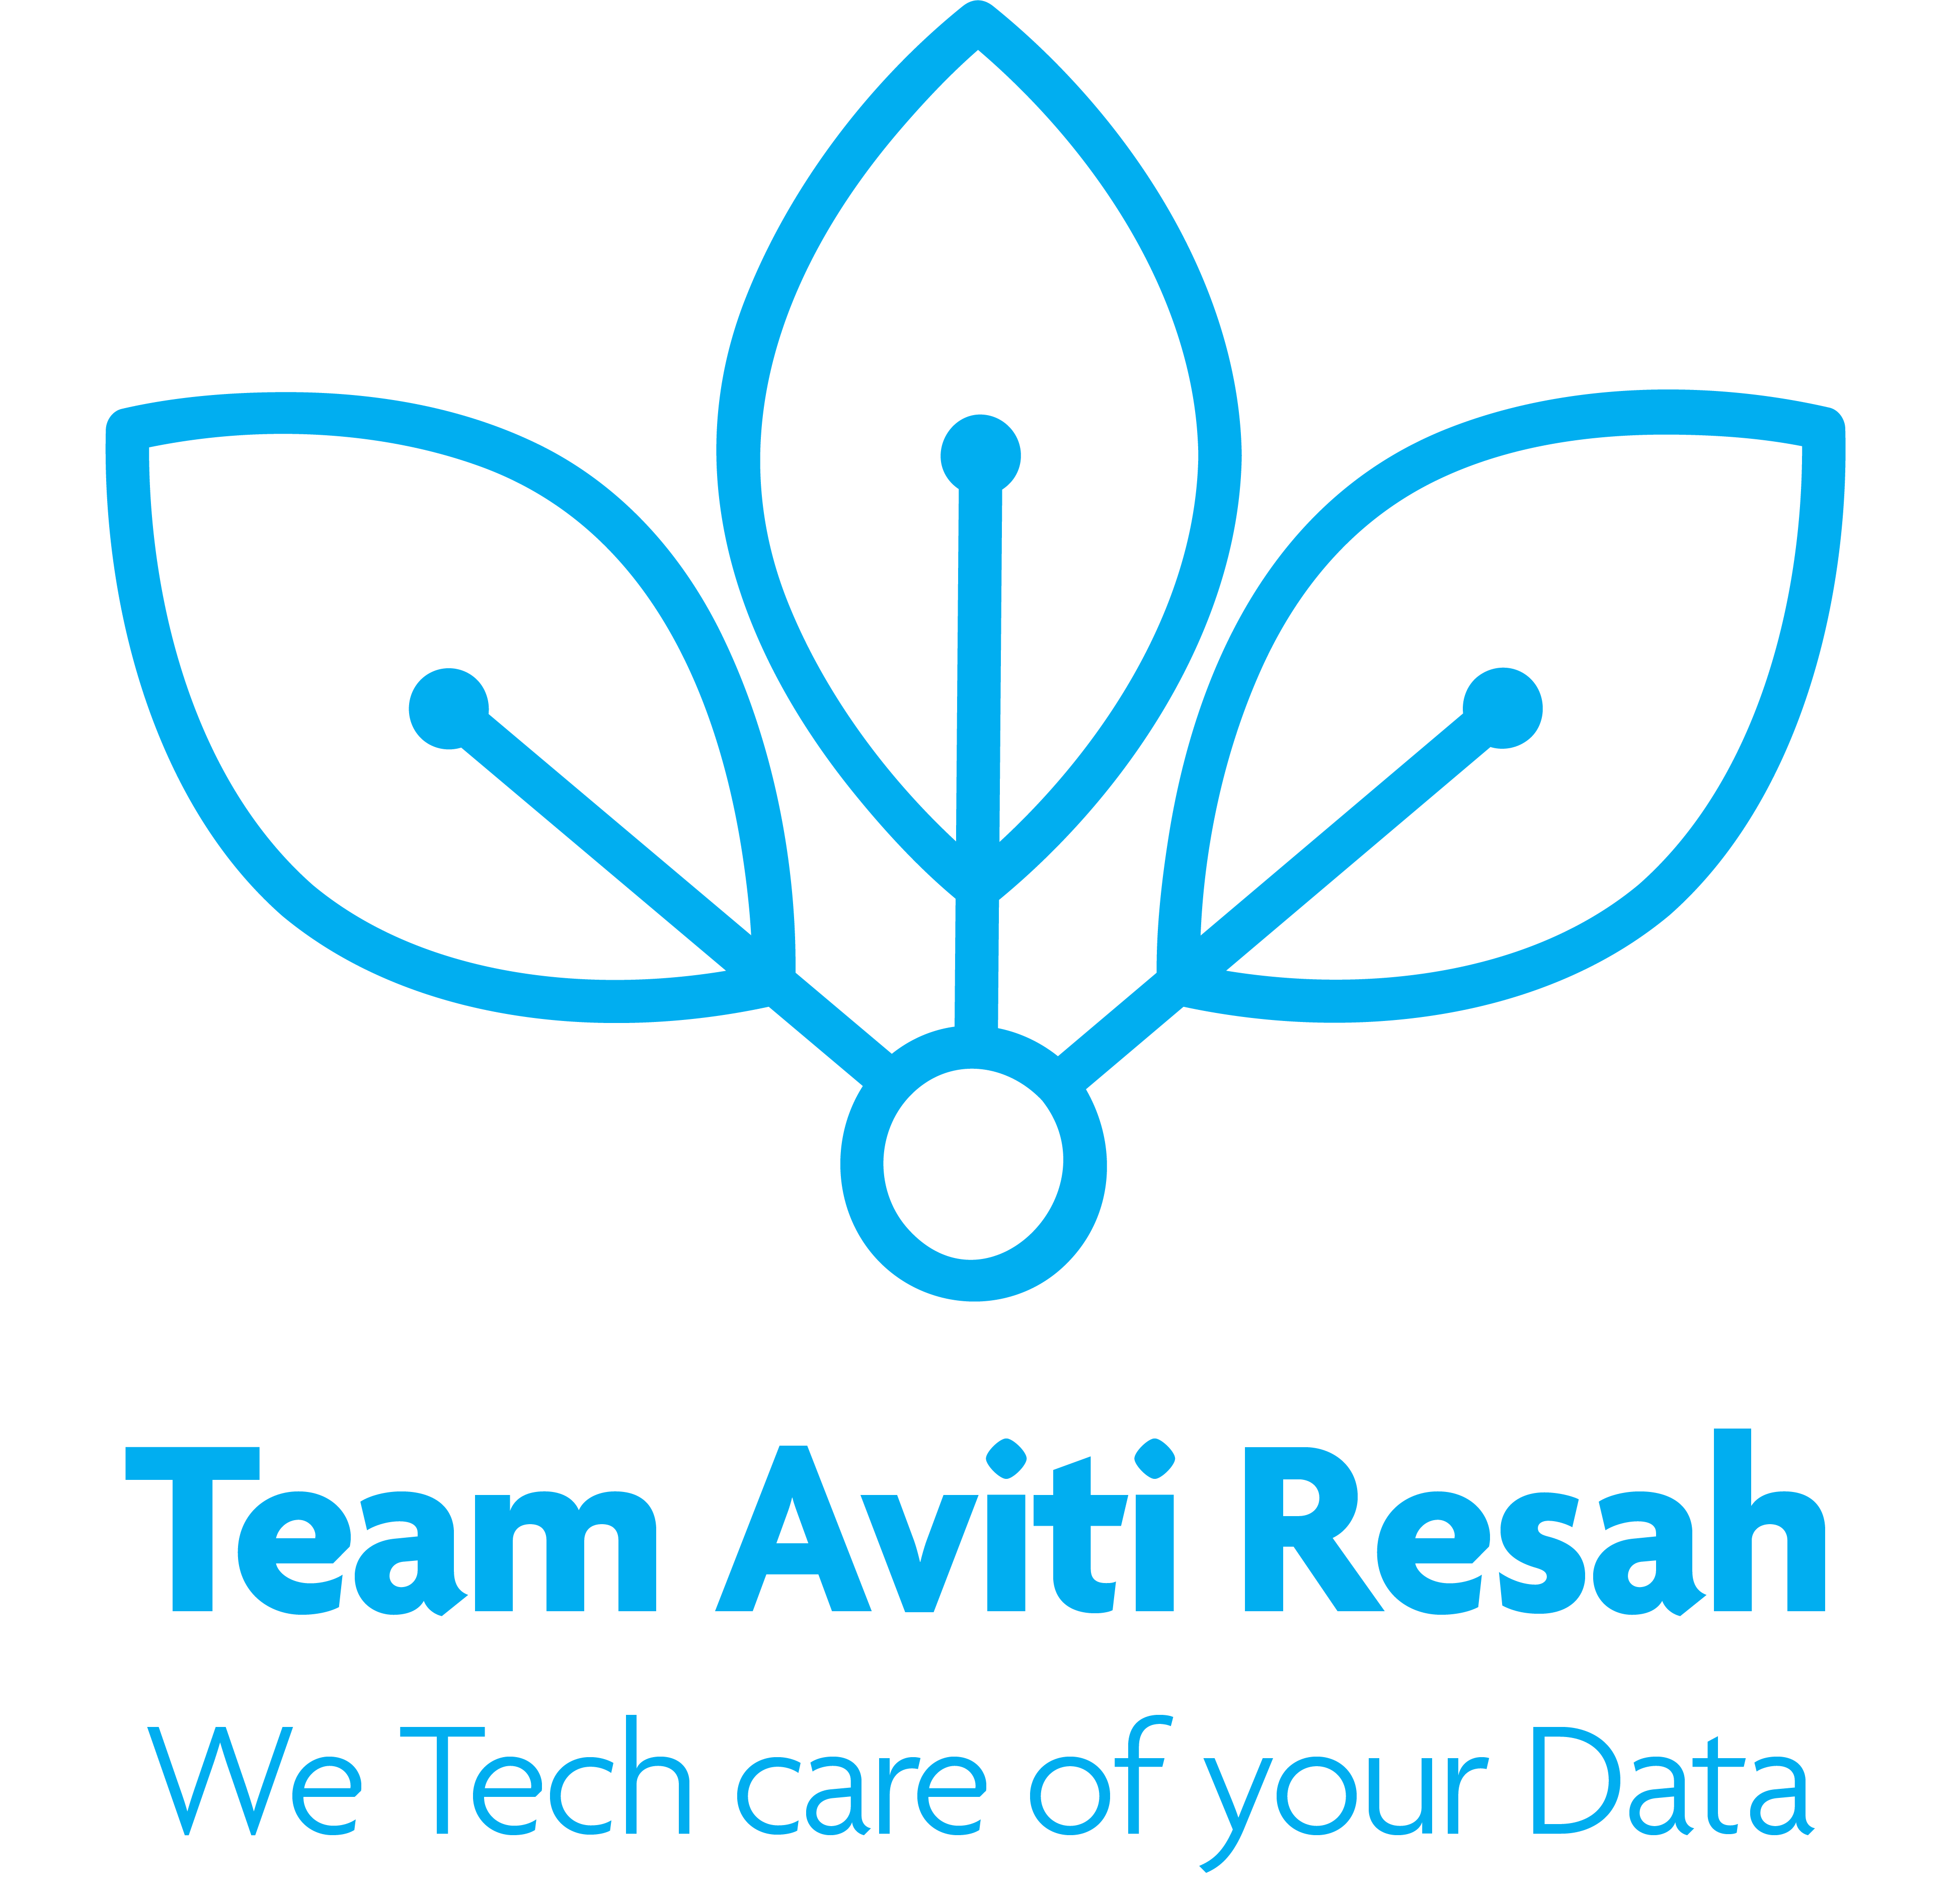 Team Aviti Resah